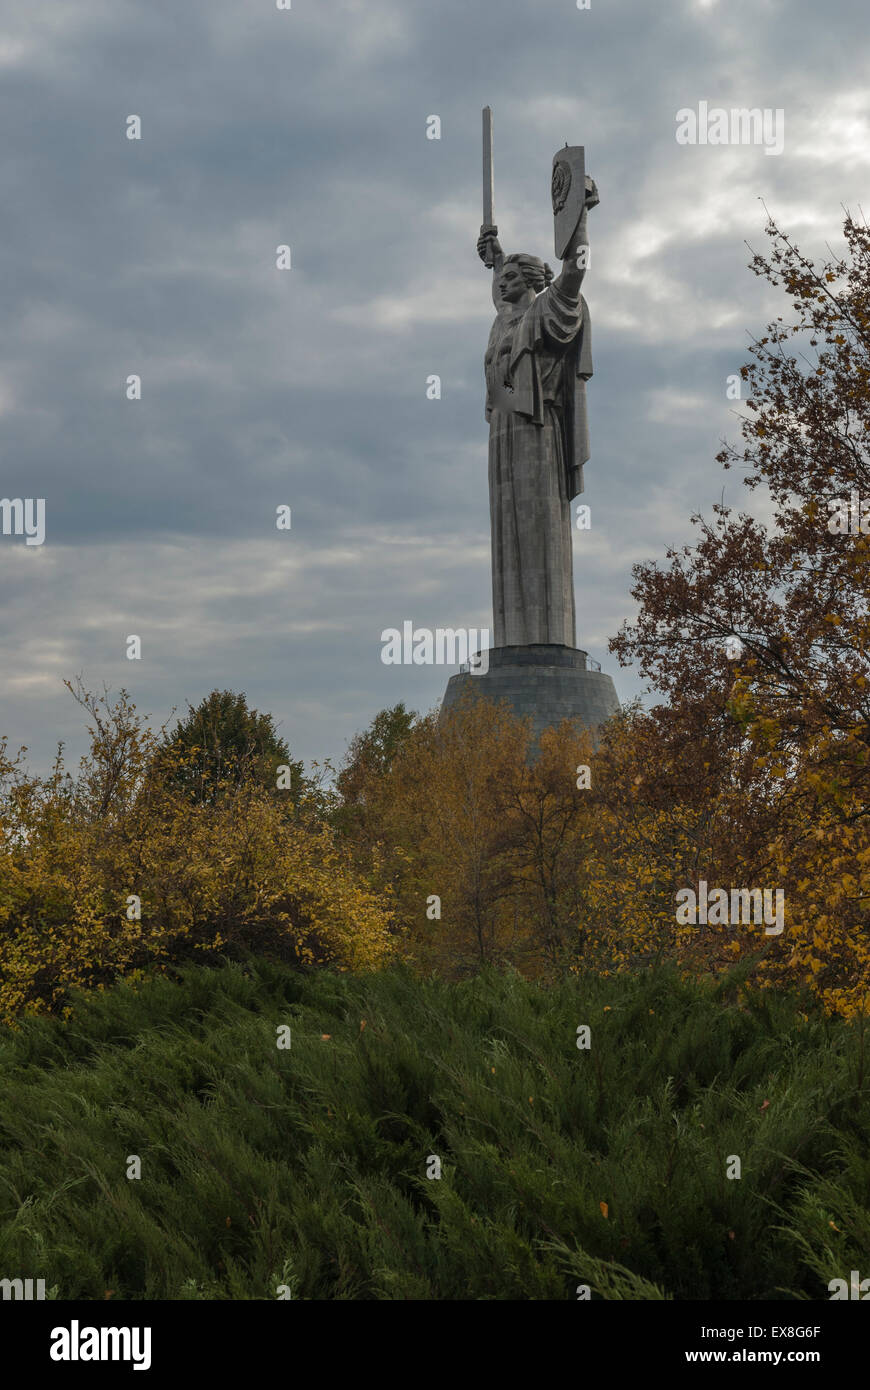 Rodina Mat, Statue of the Motherland, Kiev, Ukraine in Autumn Stock Photo